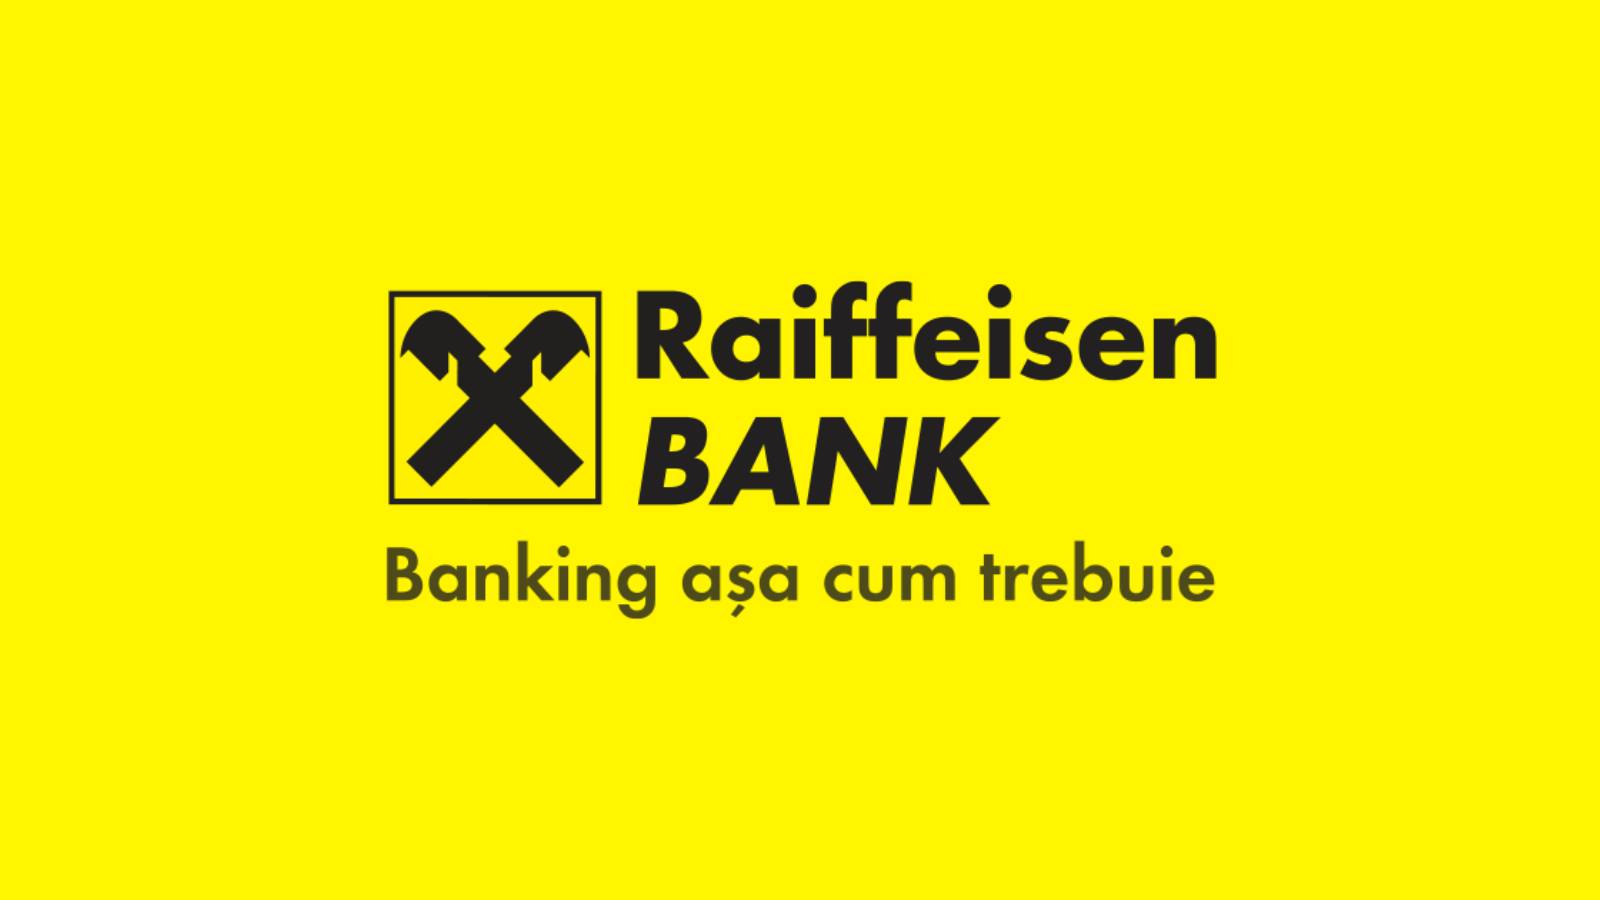 Kostenlose offizielle Informationen der Raiffeisen Bank für rumänische Kunden heute